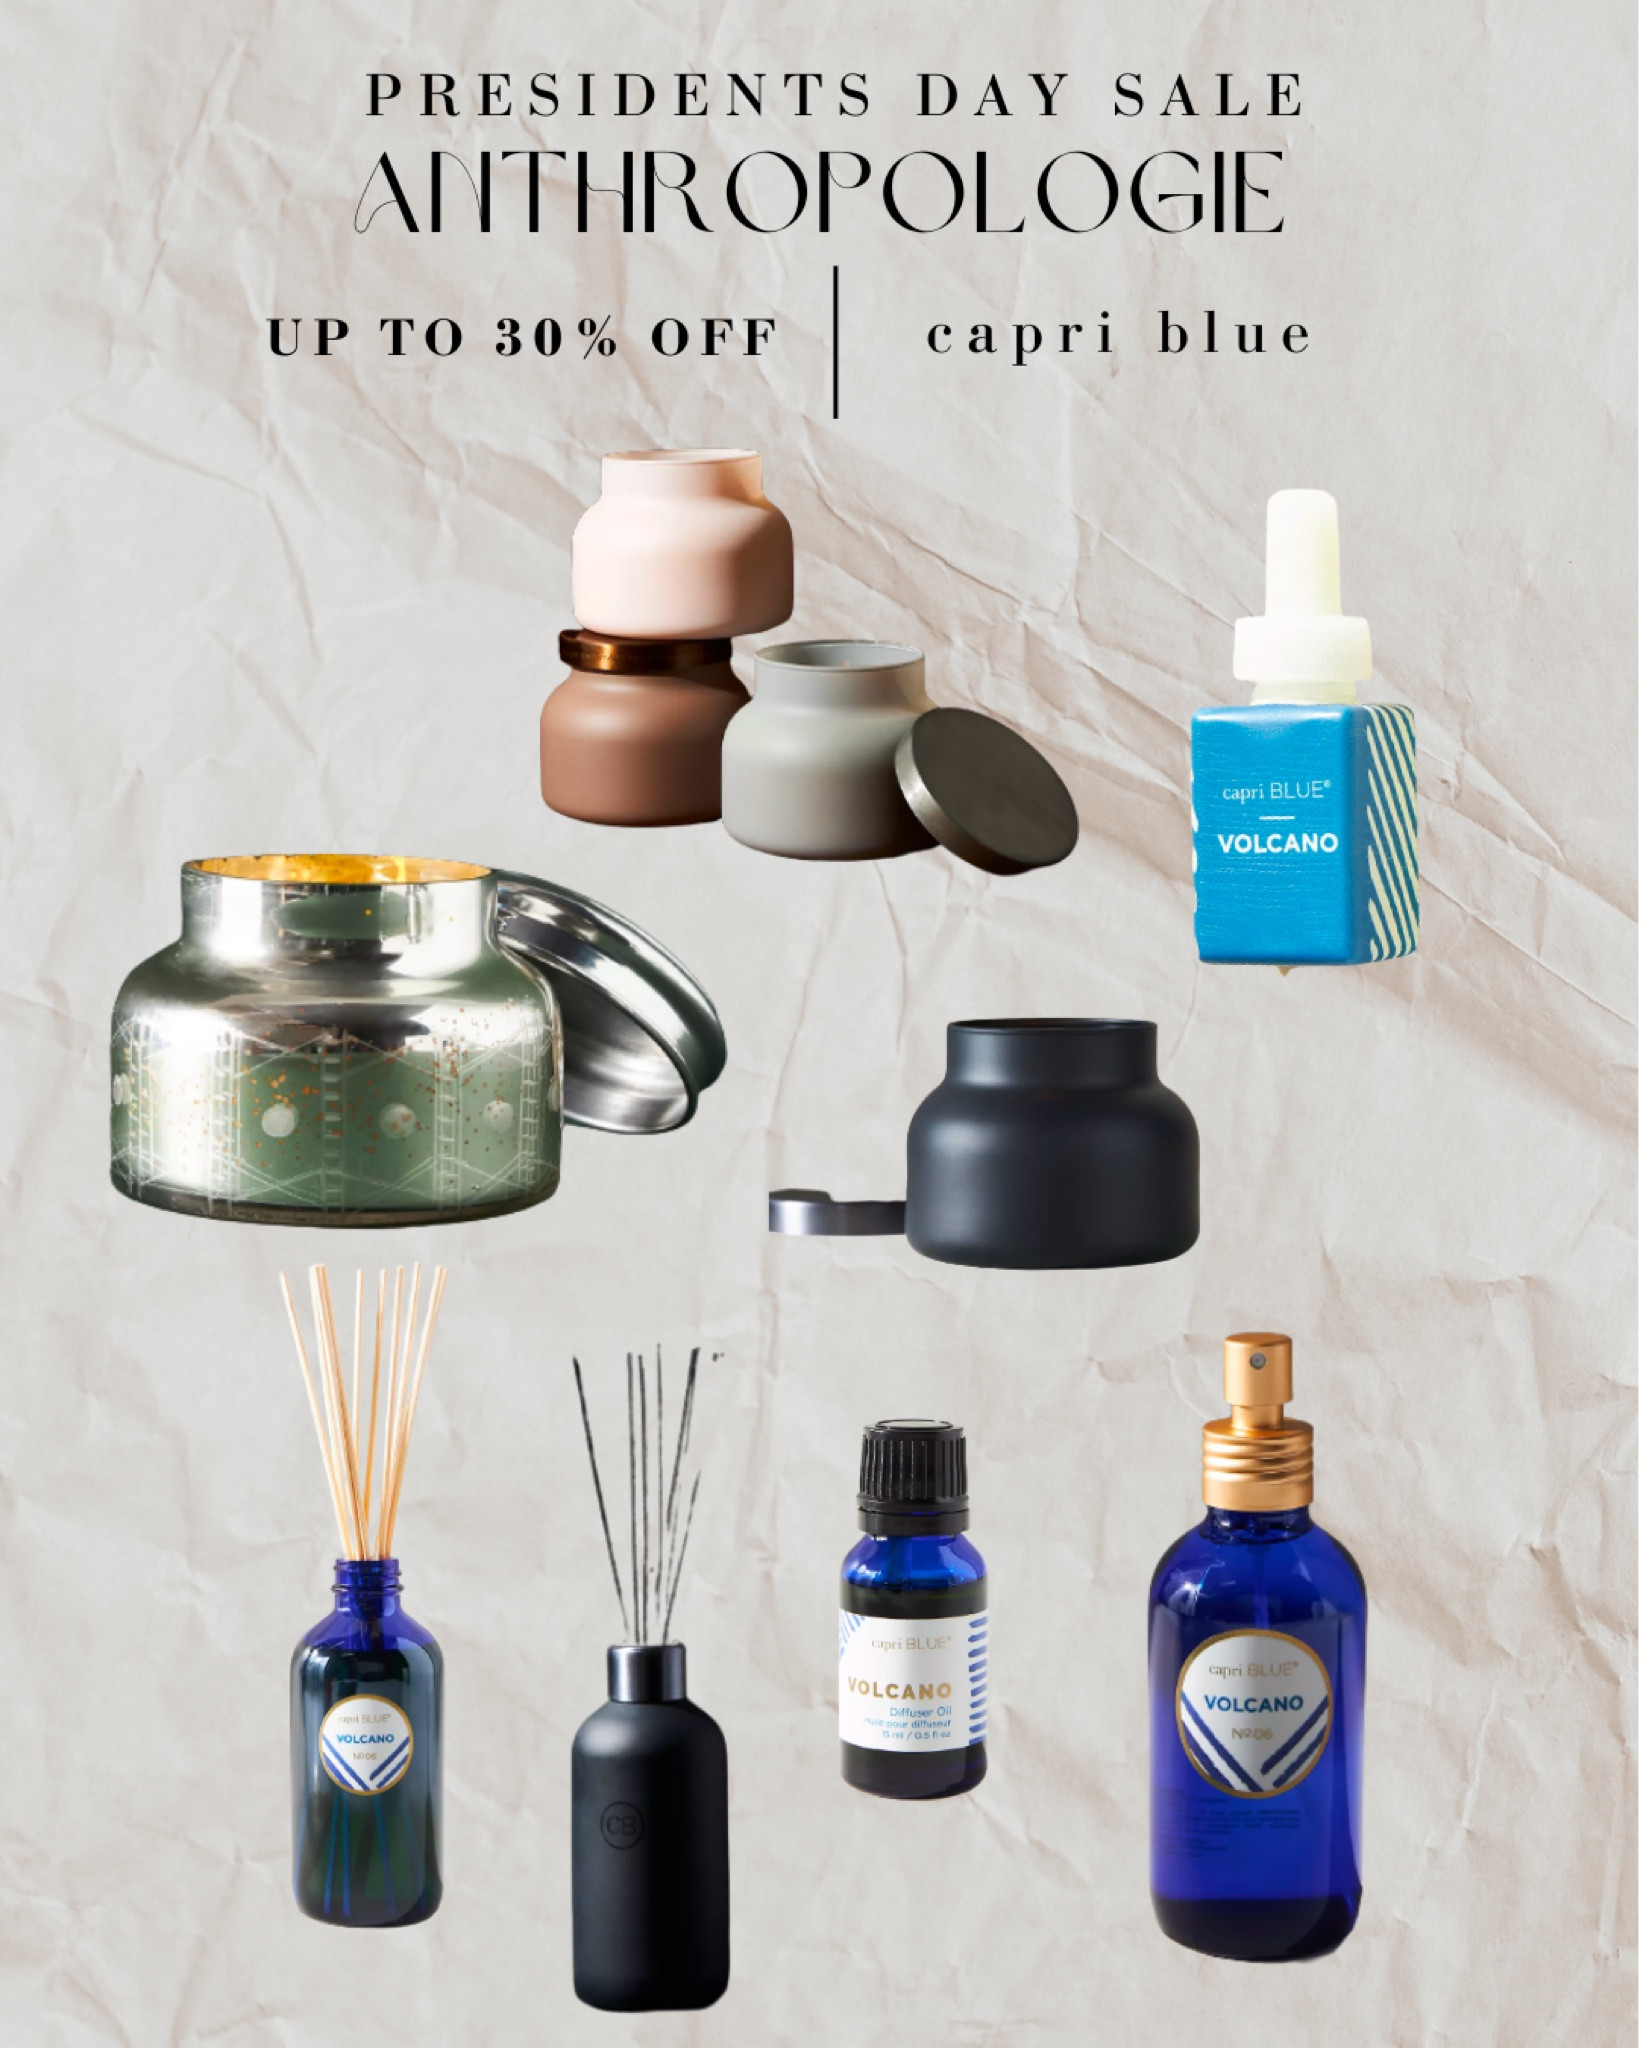 Capri Blue Diffuser Oil